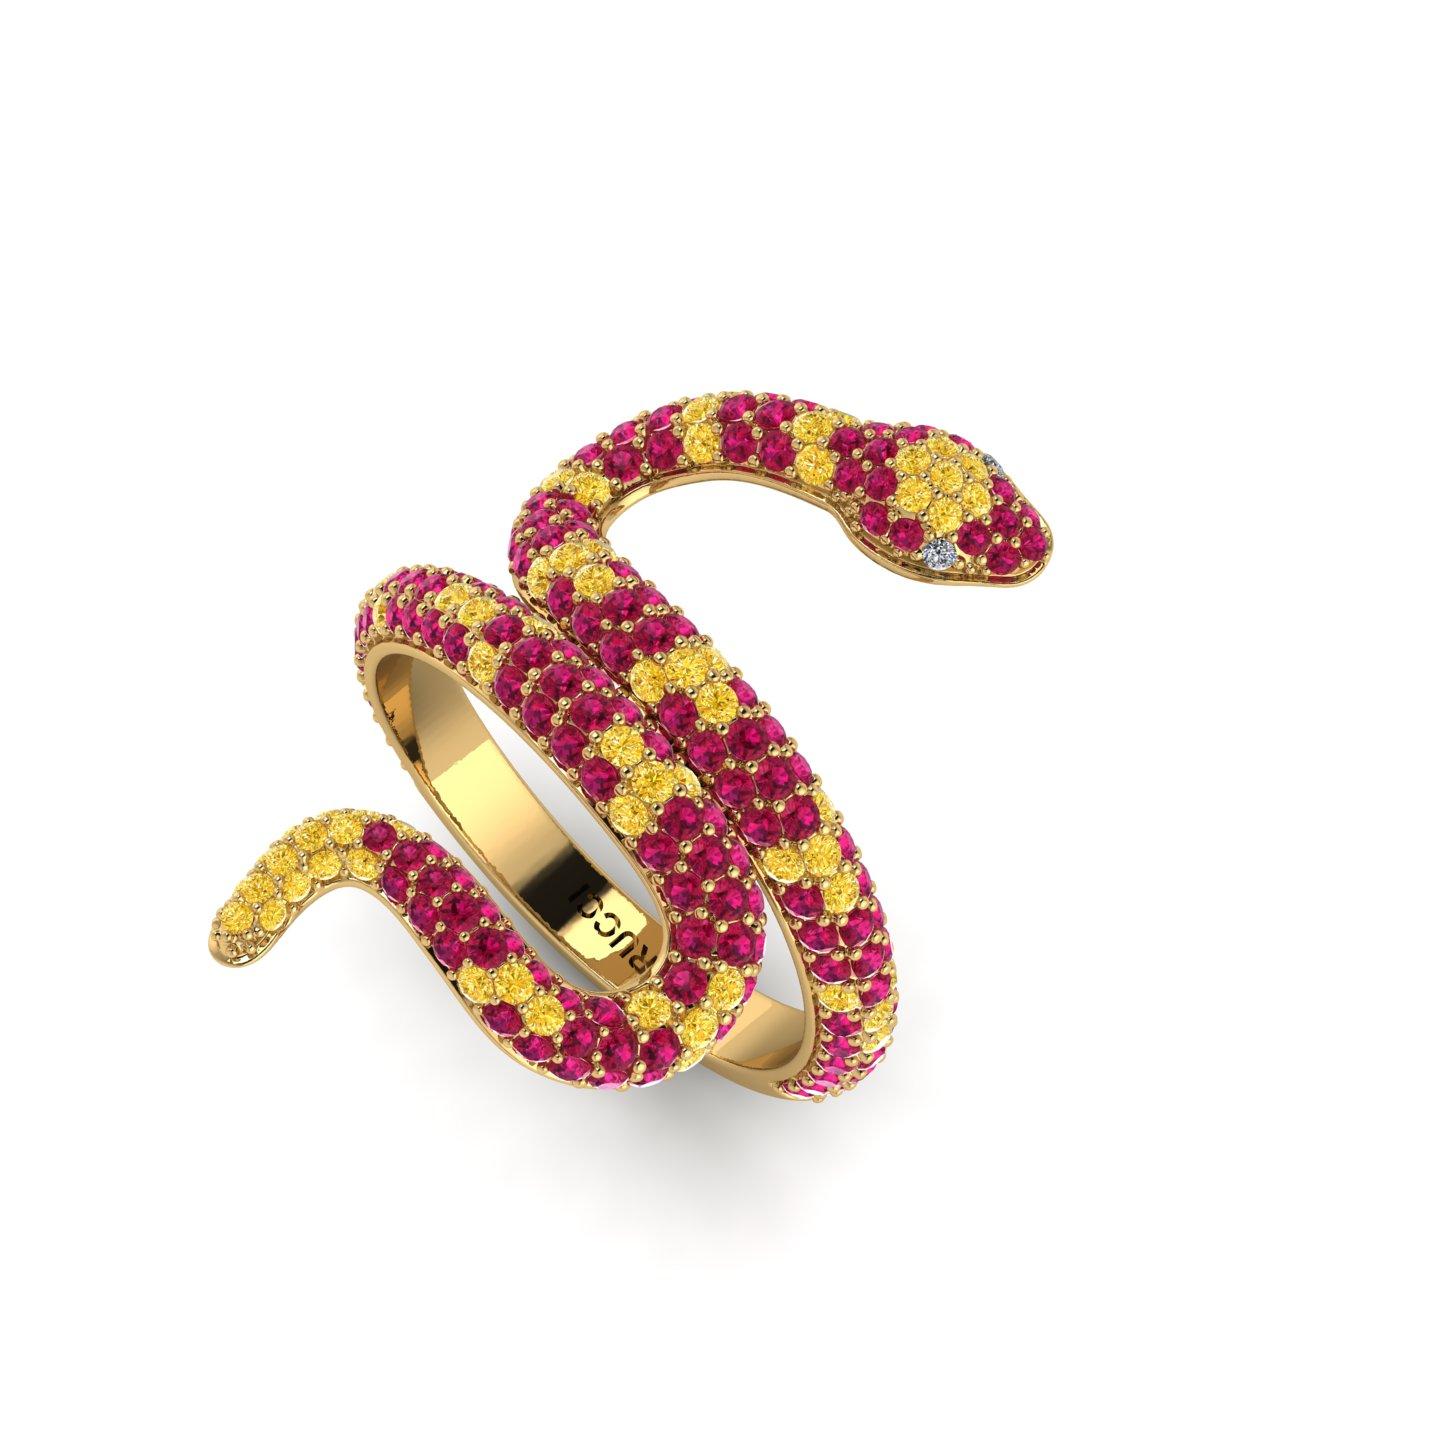 Rubin Pave' Schlange 18k Gelbgold Ring, mit gelben Saphiren, handverlesen, insgesamt ca. 1,35 Karat, hergestellt aus 18k Gelbgold  mit grünen Smaragden als Augen.  Sie können Ihre eigene individuelle Kombination von Farbedelsteinen